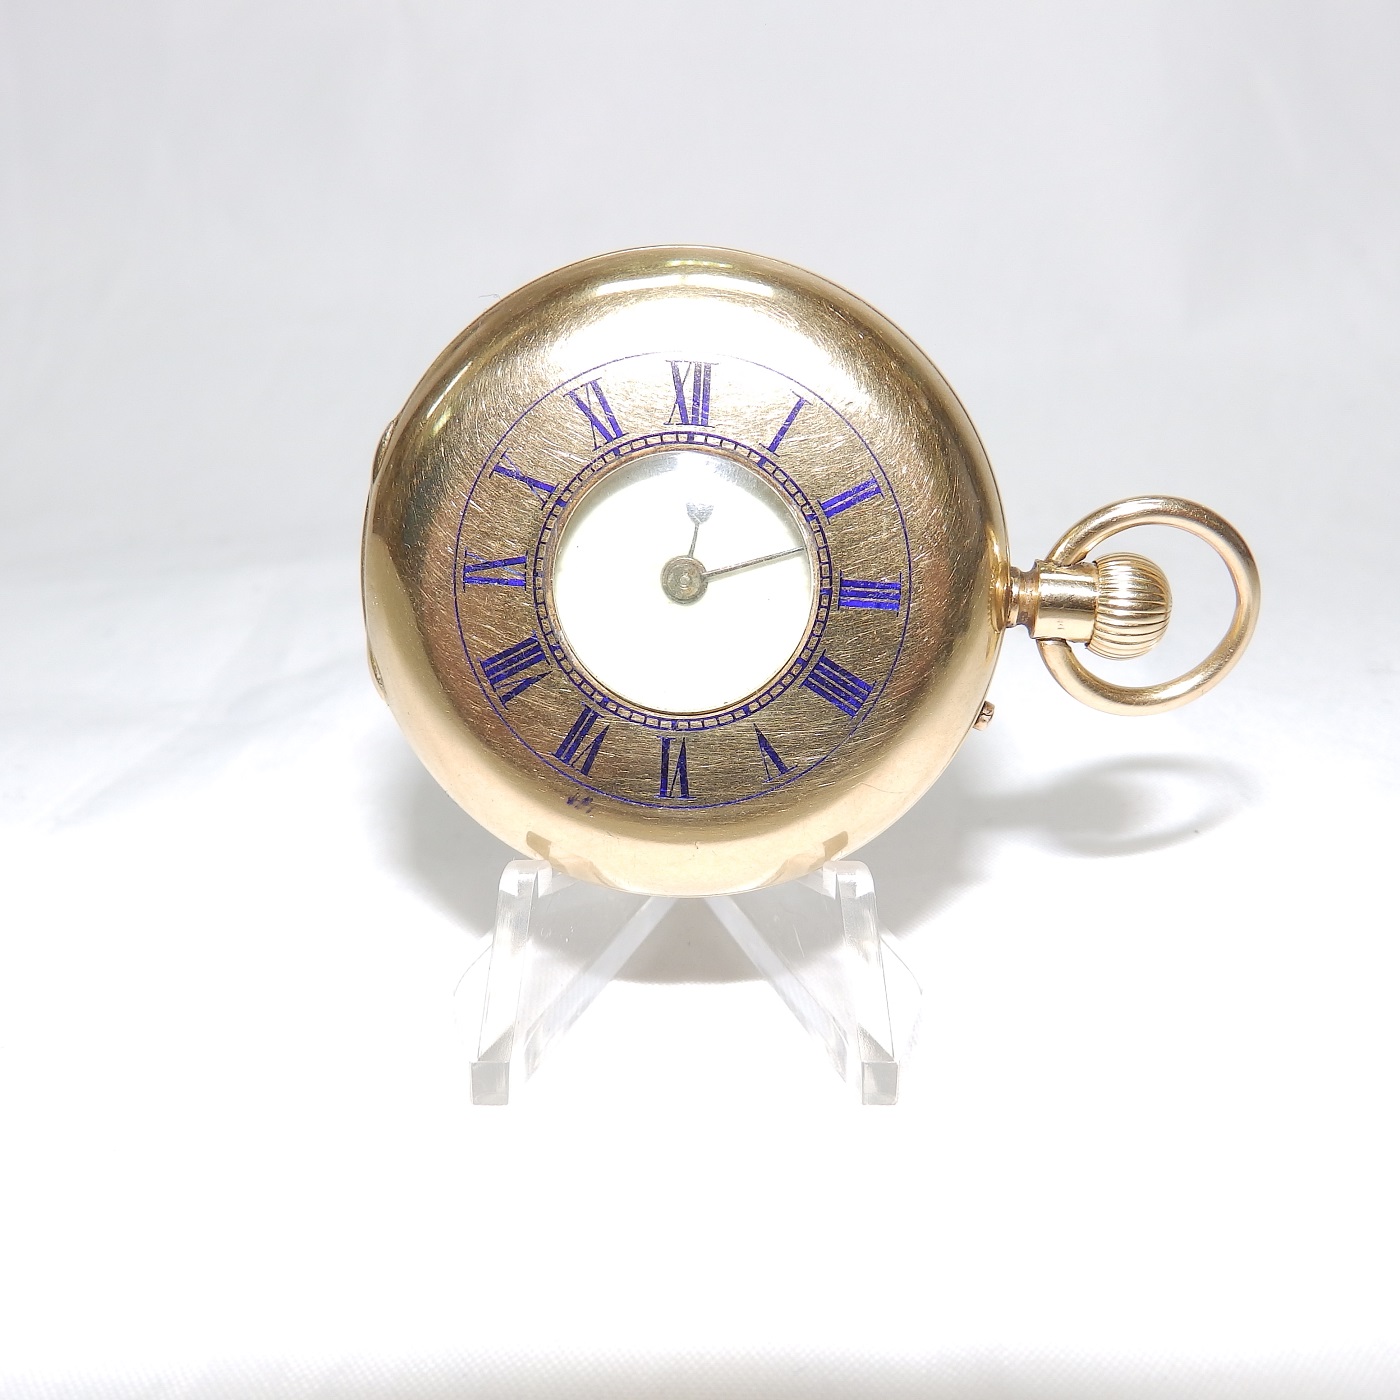 Lister & Sons, Newcastle. Reloj de Bolsillo para señora, media saboneta, remontoir. Ca. 1840